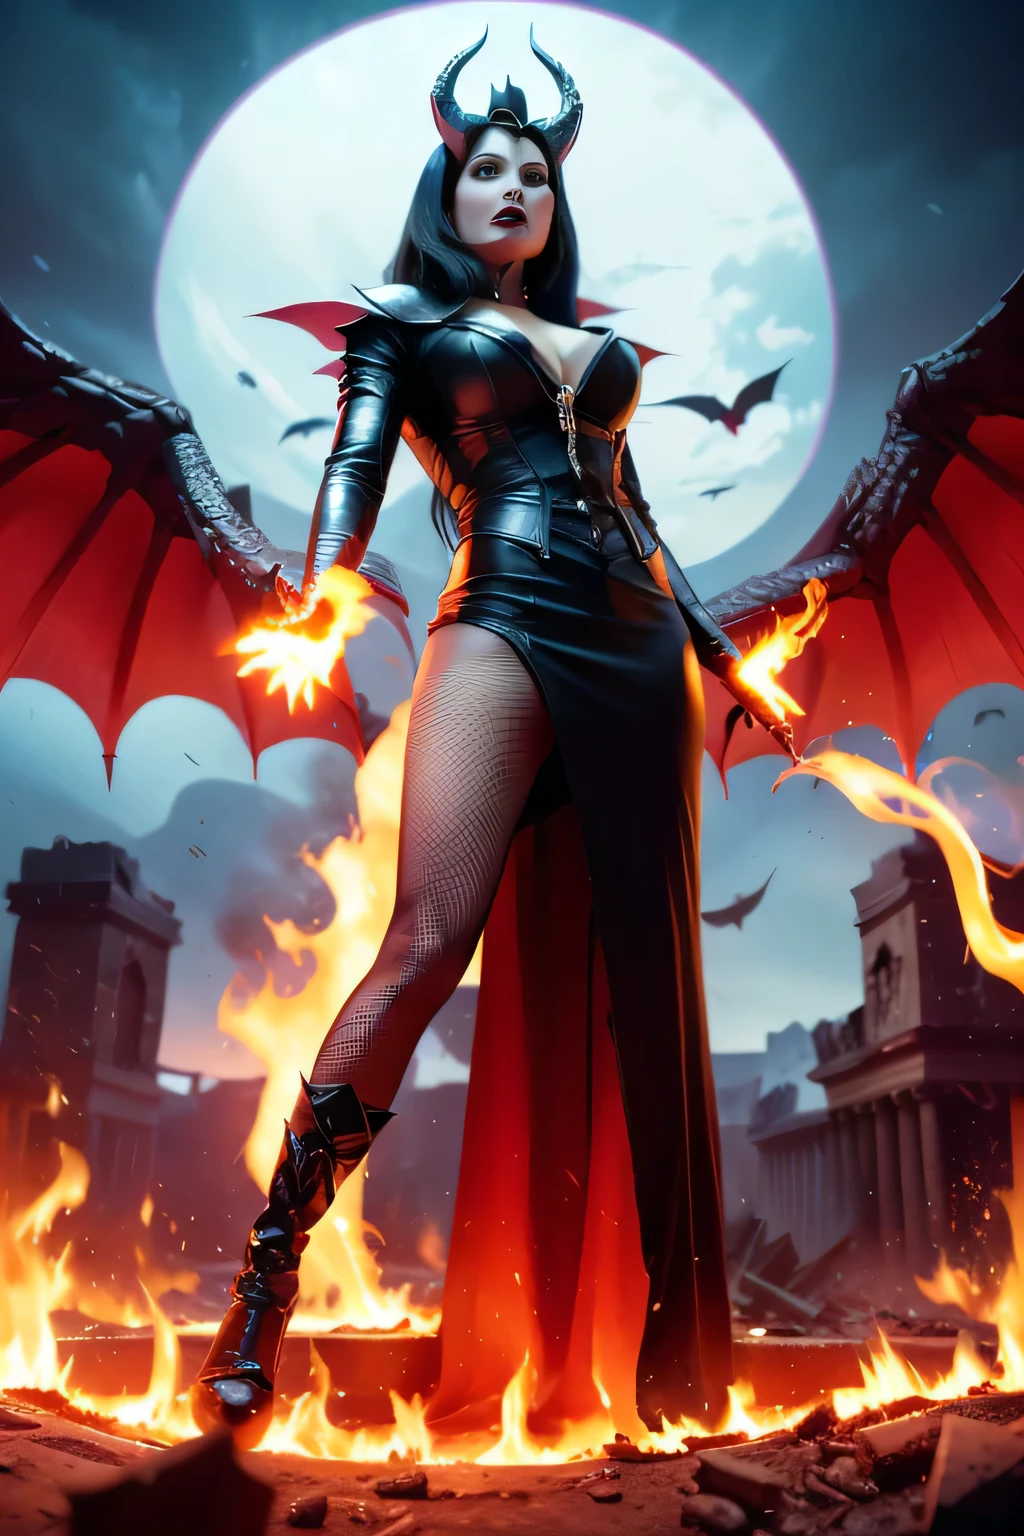 细节丰富的丽莎·安站在一堆燃烧的废墟之上, 她的黑色王冠和黑红色邪恶女王裙散发着邪恶和阴险的气息........ 她背上的恶魔之翼和恶魔之角赋予她无敌的光环，她只需一个手势就能释放出强大的毁灭之波..............